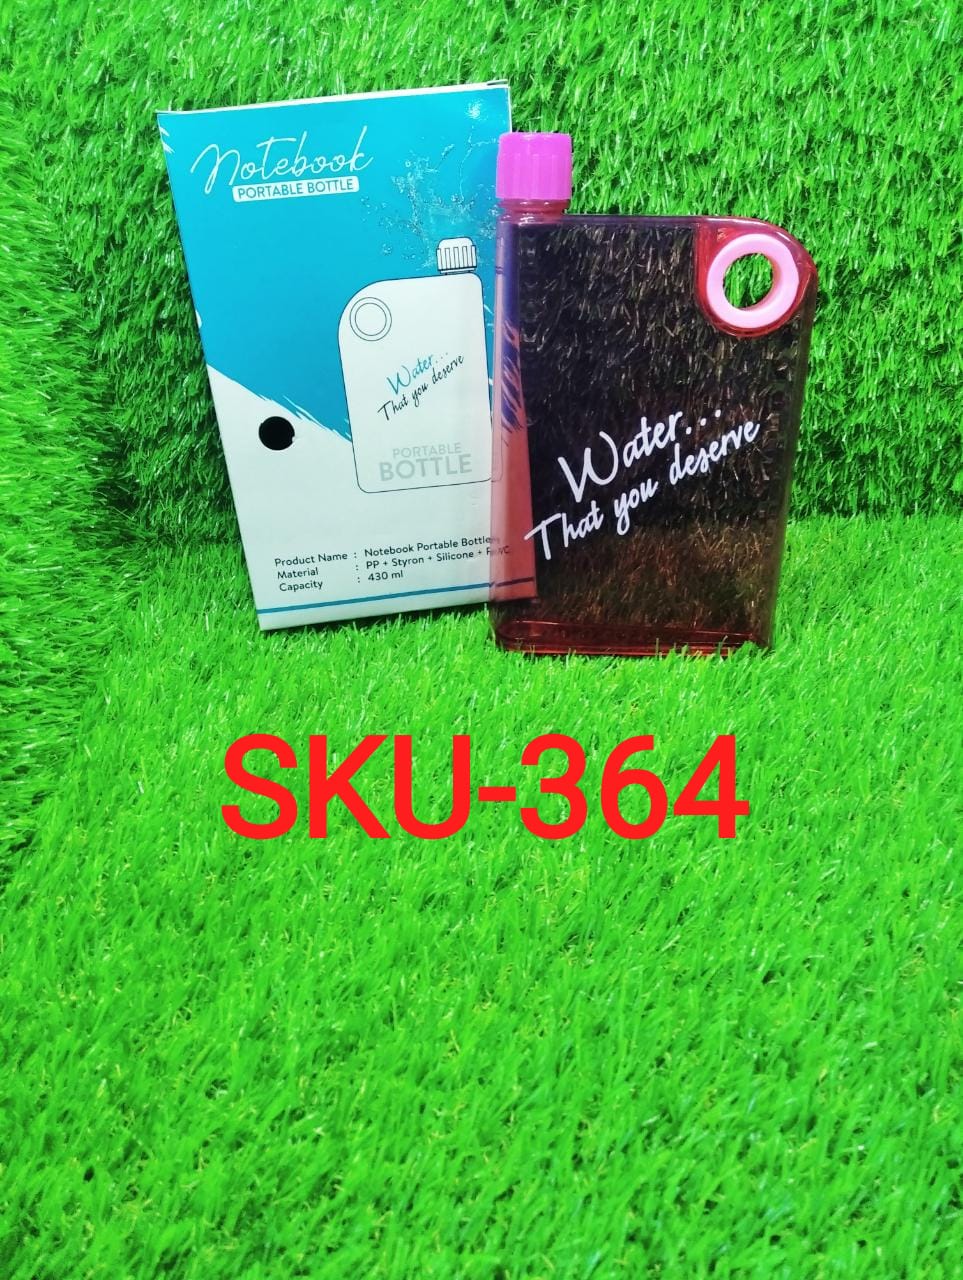 0364 Notebook Style Slim Water Bottle (380 ml, Multicolor) DeoDap